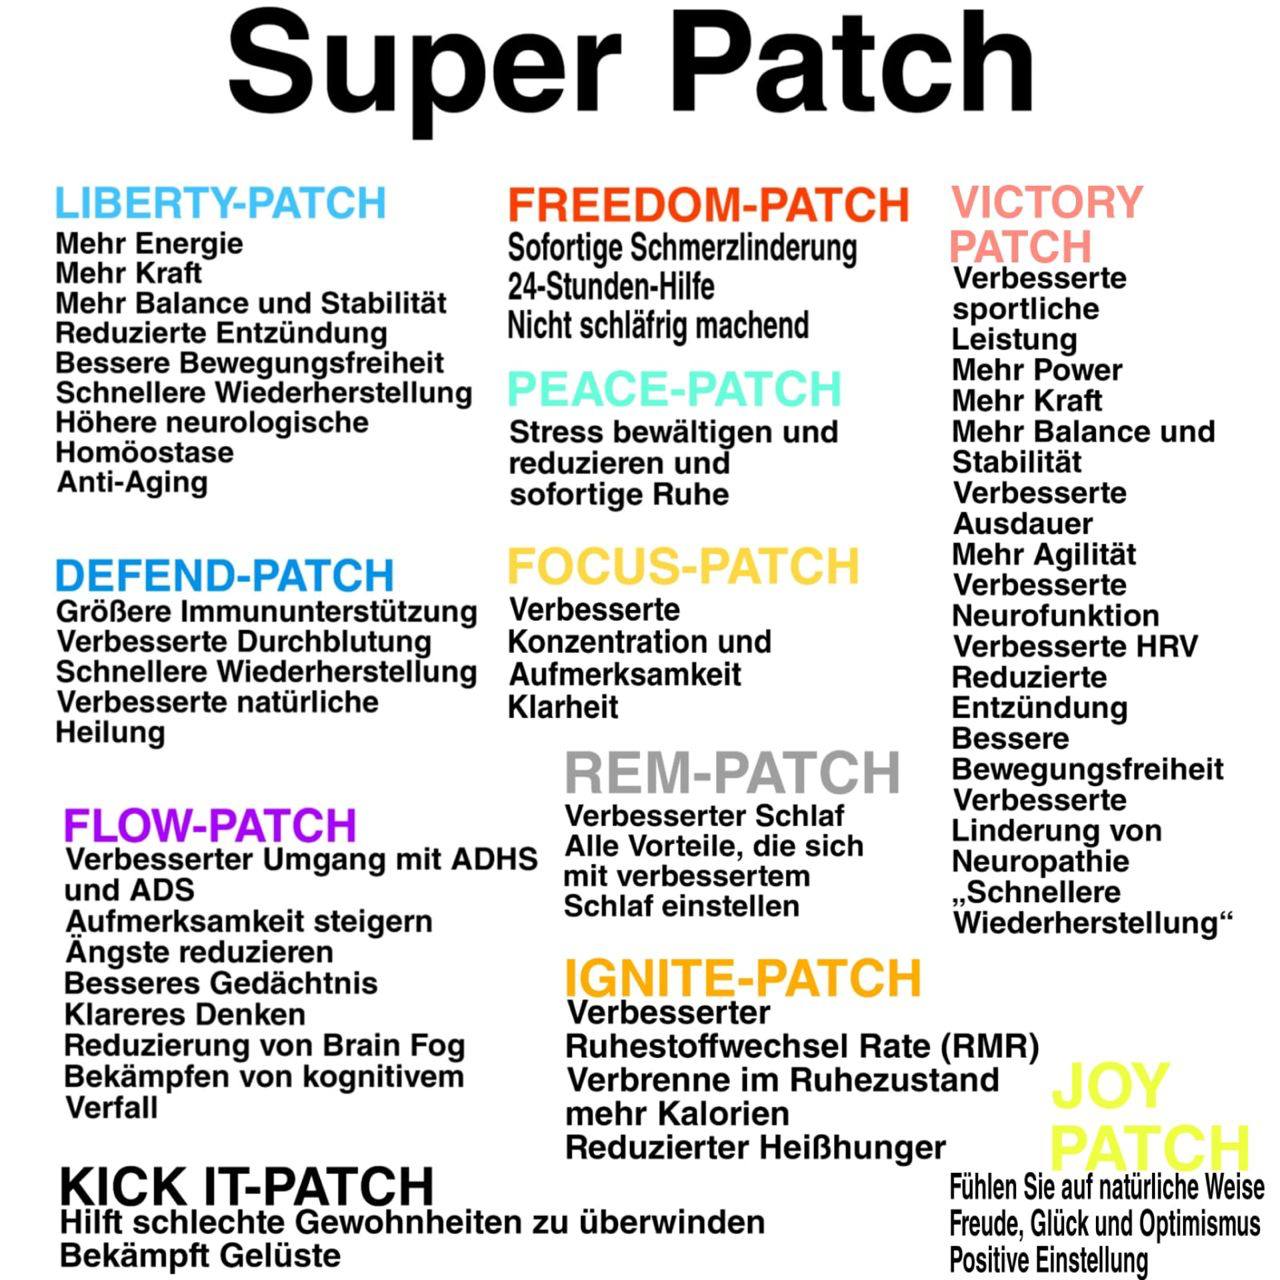 Die Vielfalt der SuperPatch